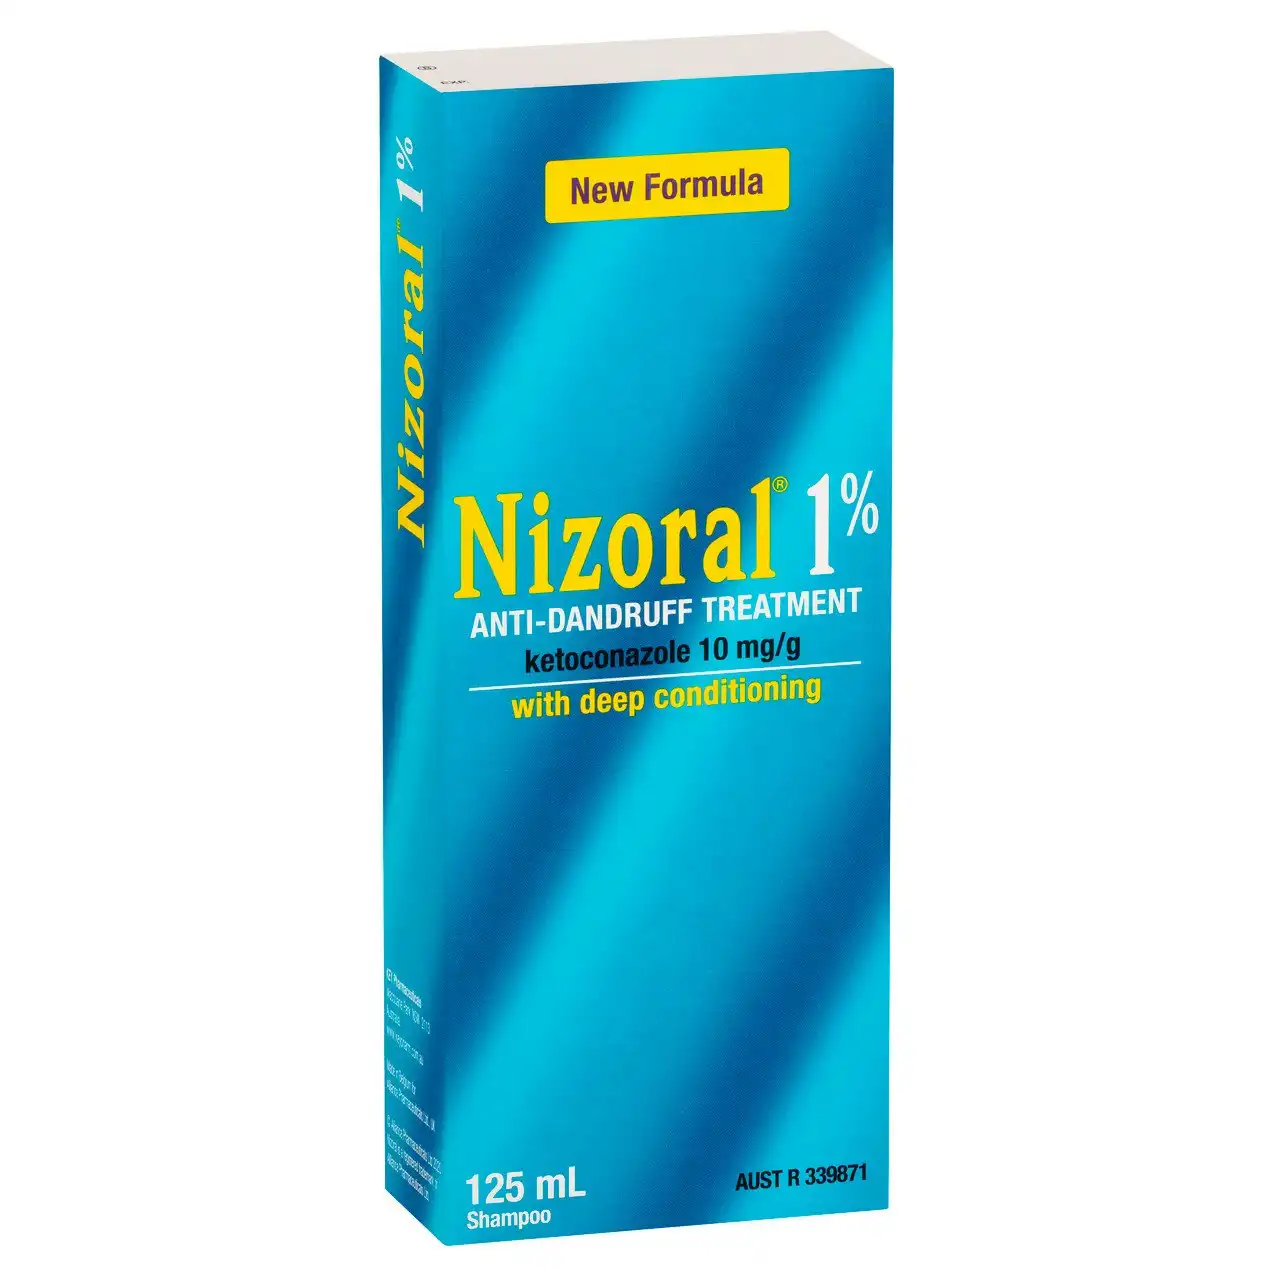 NIZORAL 1% Anti-Dandruff Treatment 125mL